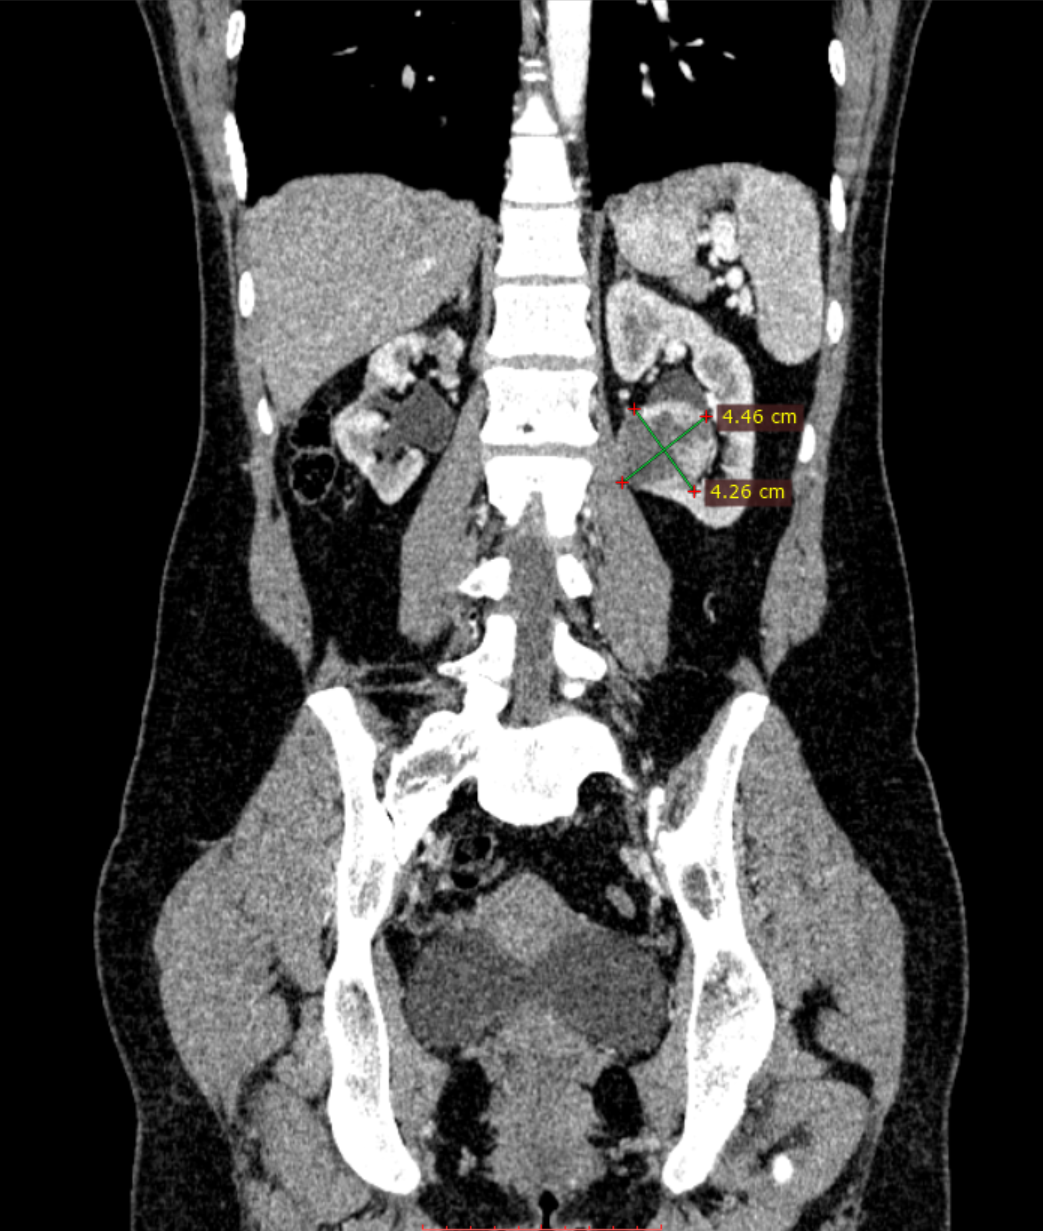 Operacja laparoskopowego usunięcia gua nerki w 13 tyg. ciąży